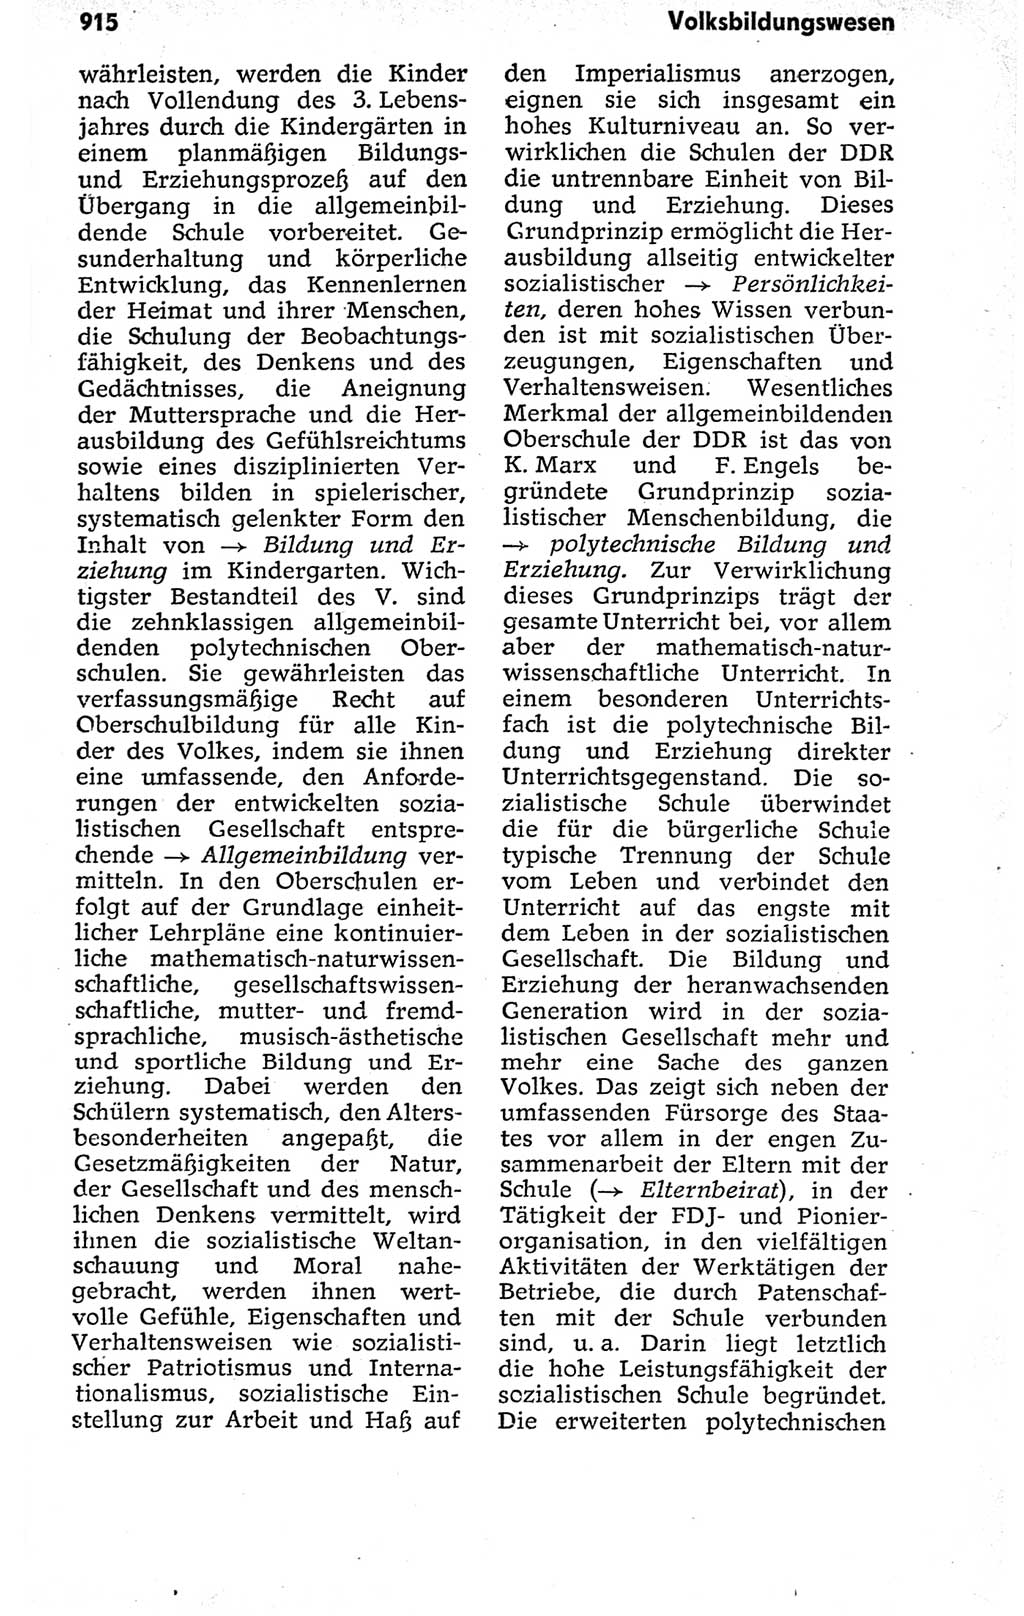 Kleines politisches Wörterbuch [Deutsche Demokratische Republik (DDR)] 1973, Seite 915 (Kl. pol. Wb. DDR 1973, S. 915)